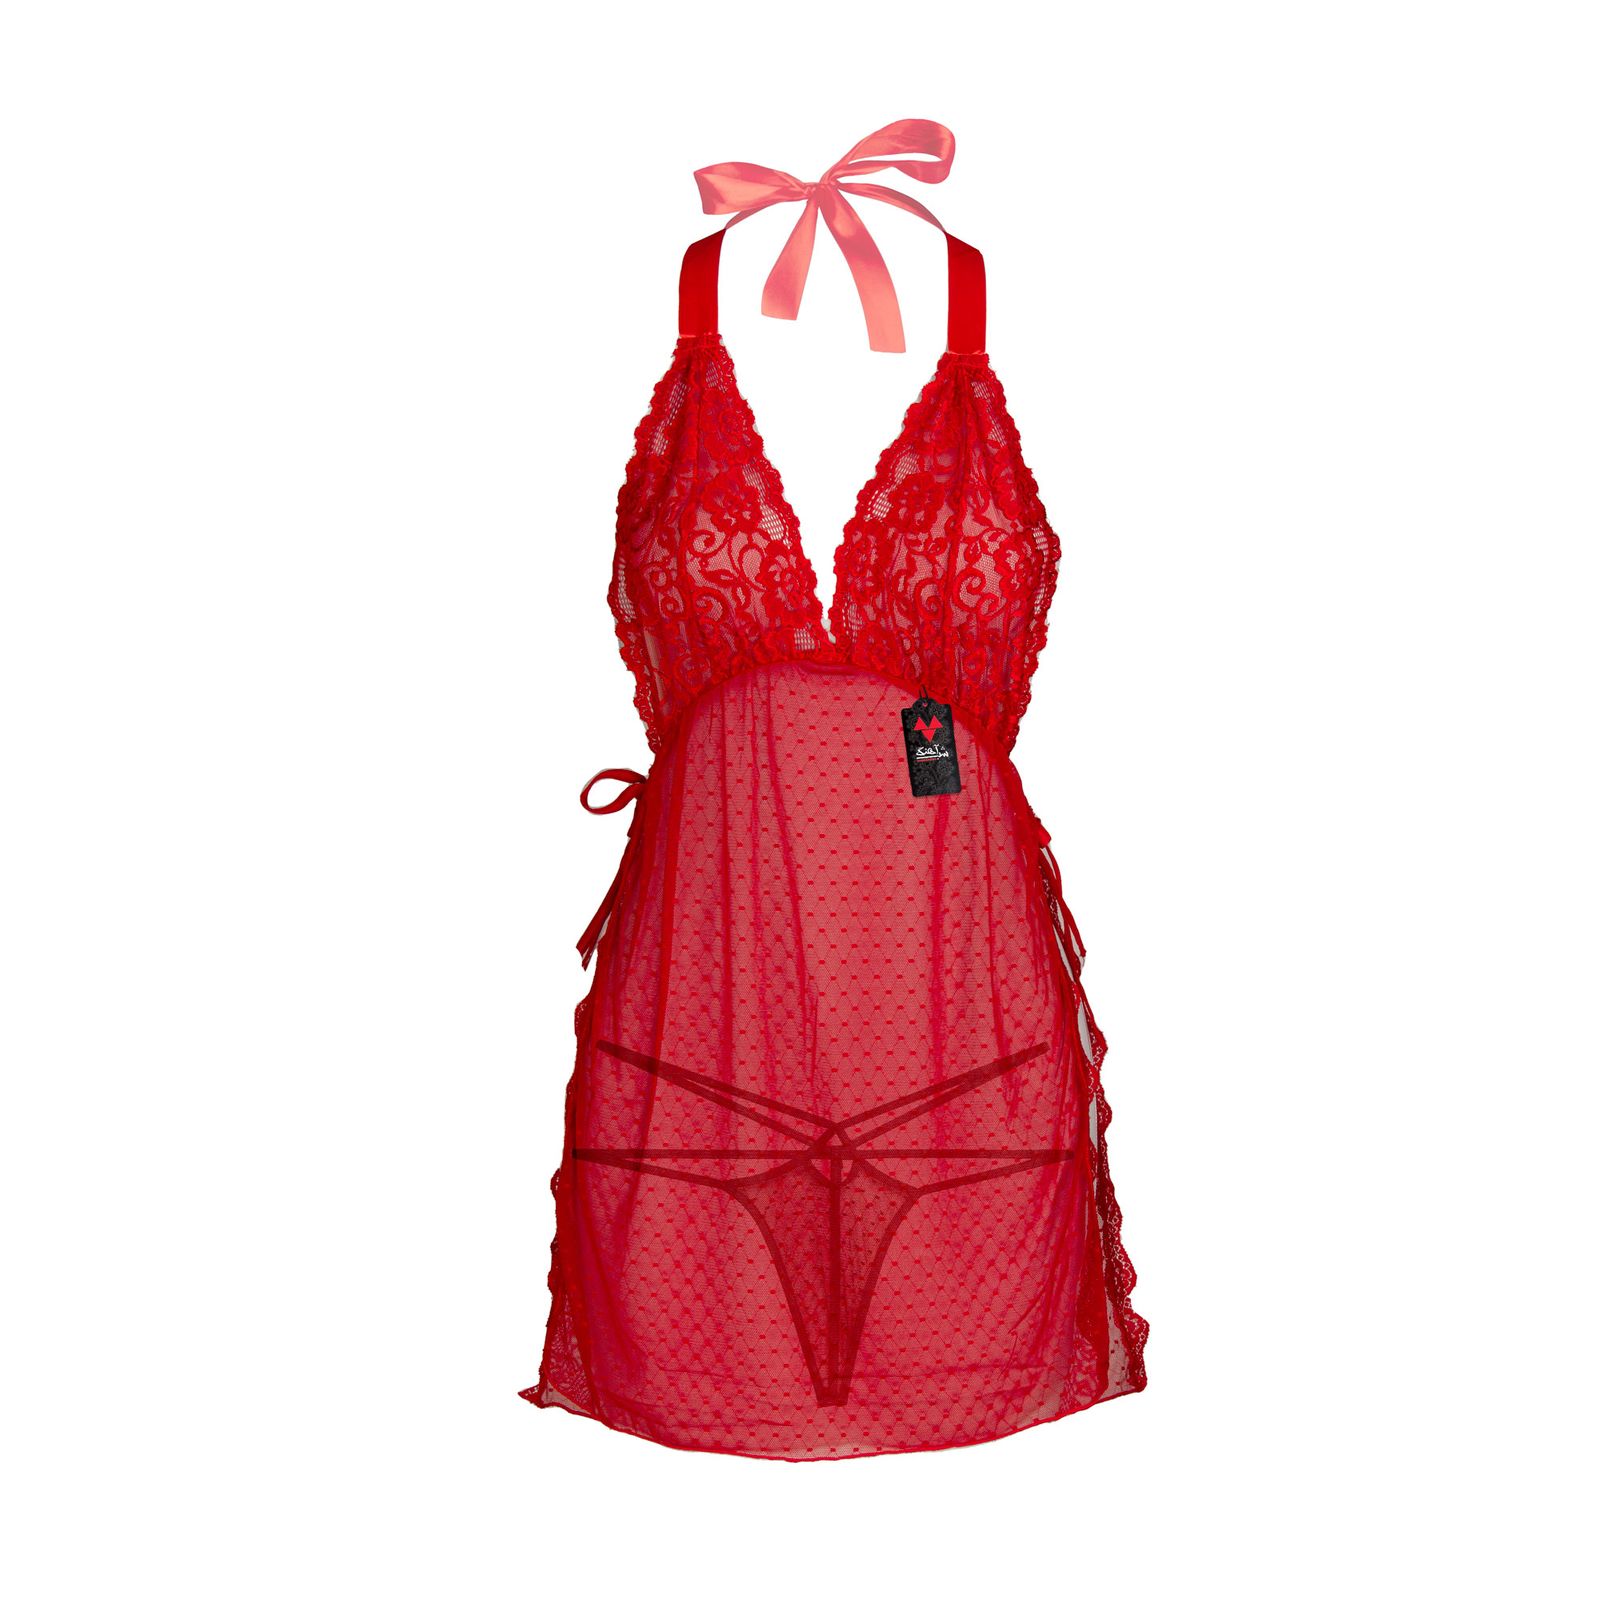 لباس خواب زنانه شباهنگ مدل Waiter رنگ قرمز -  - 4